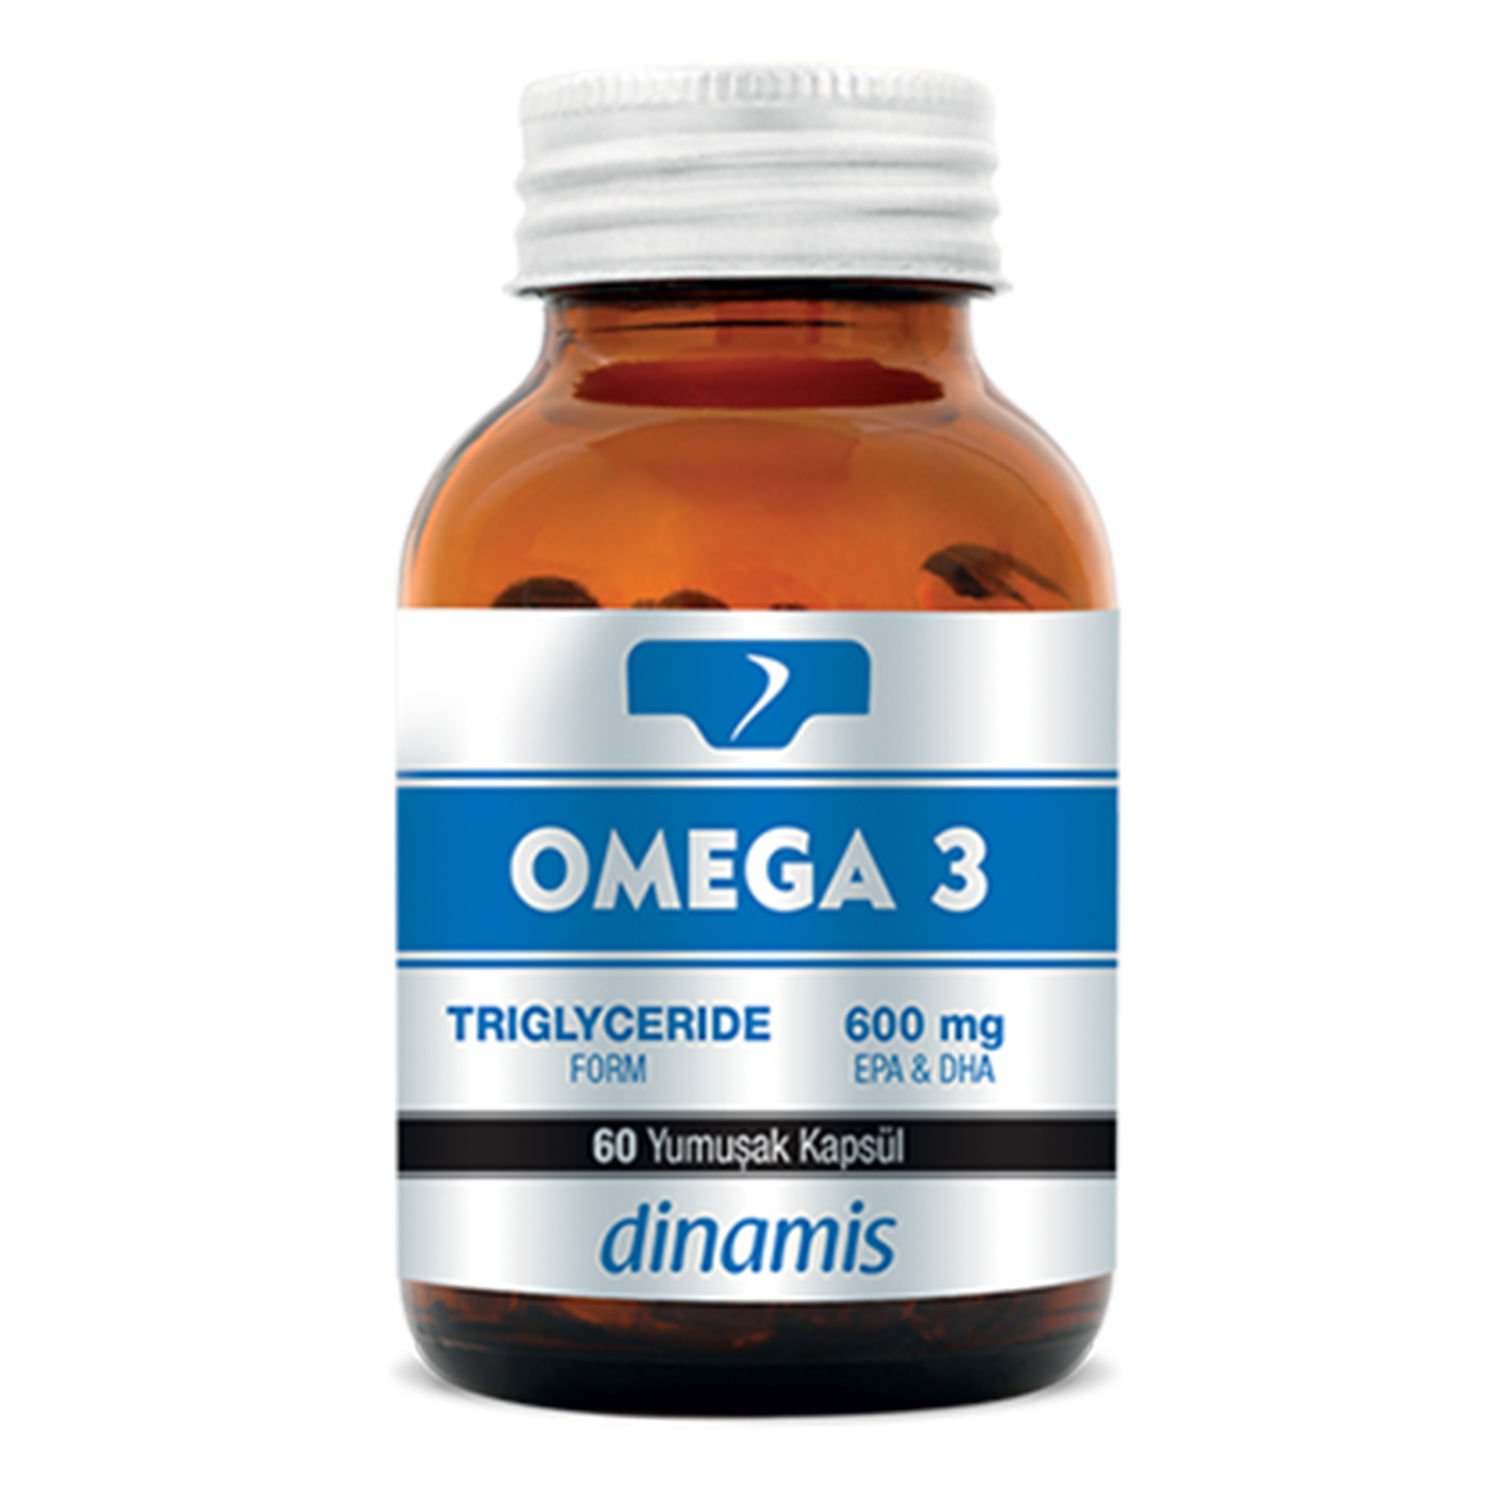 Dinamis Omega 3 Takviye Edici Gıda 60 Yumuşak Kapsül